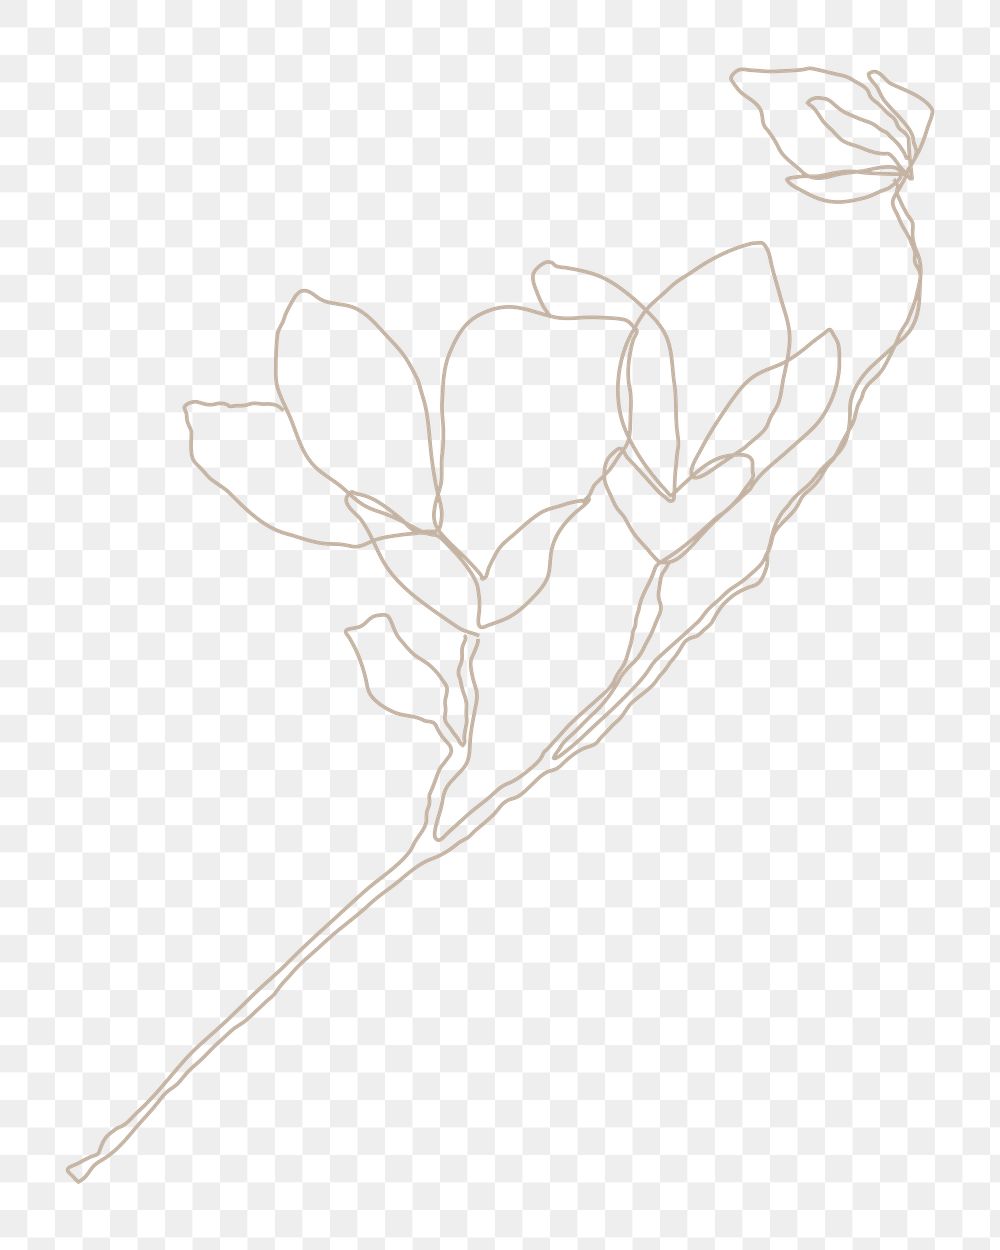 Magnolia flower png sticker, line art illustration, transparent background